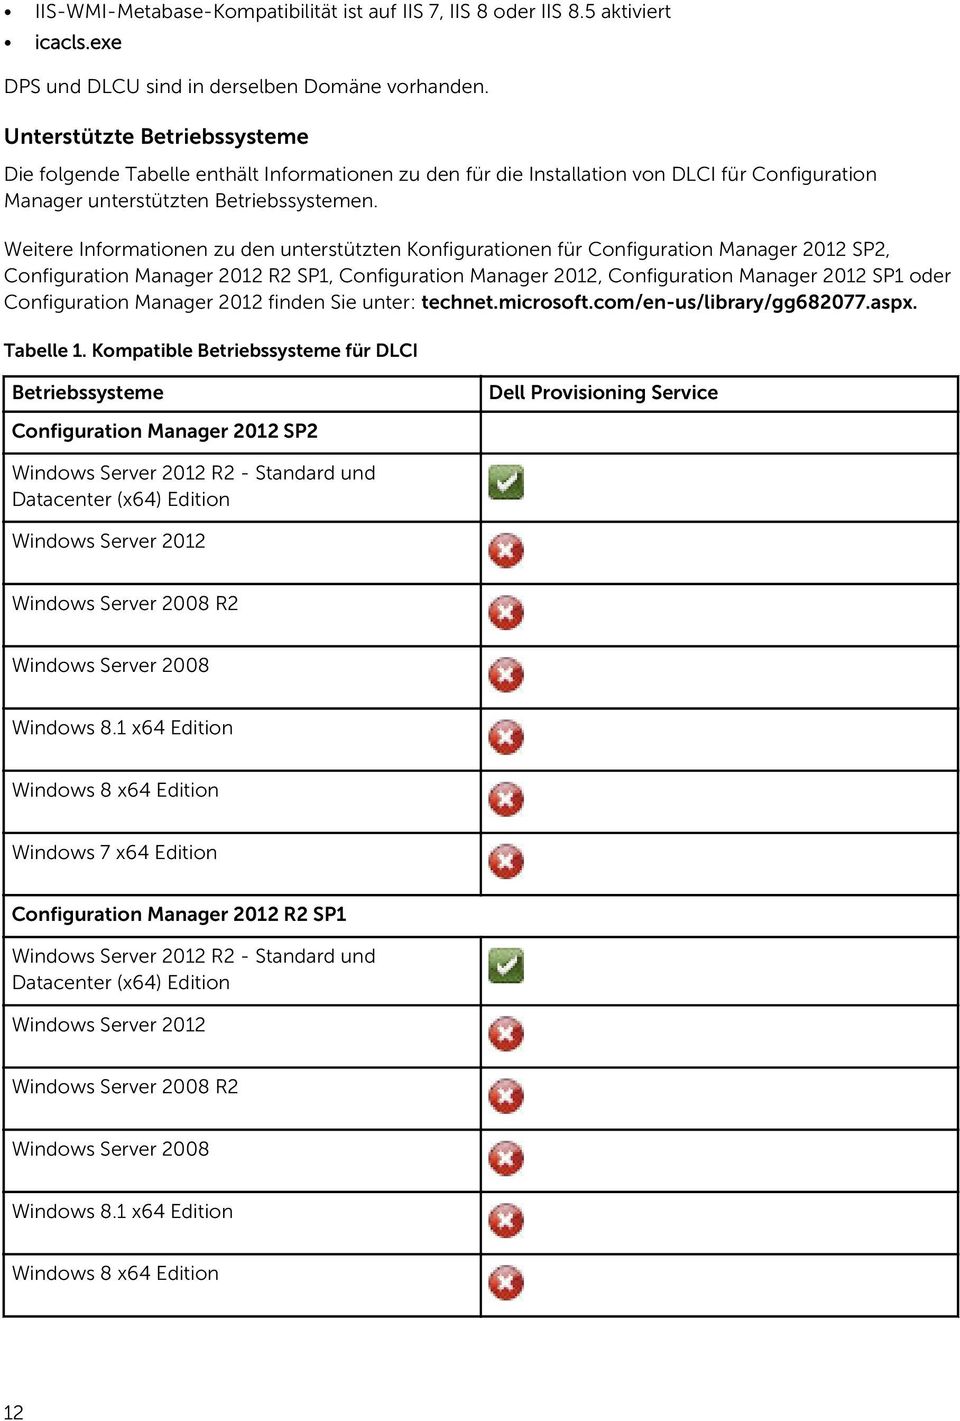 Weitere Informationen zu den unterstützten Konfigurationen für Configuration Manager 2012 SP2, Configuration Manager 2012 R2 SP1, Configuration Manager 2012, Configuration Manager 2012 SP1 oder